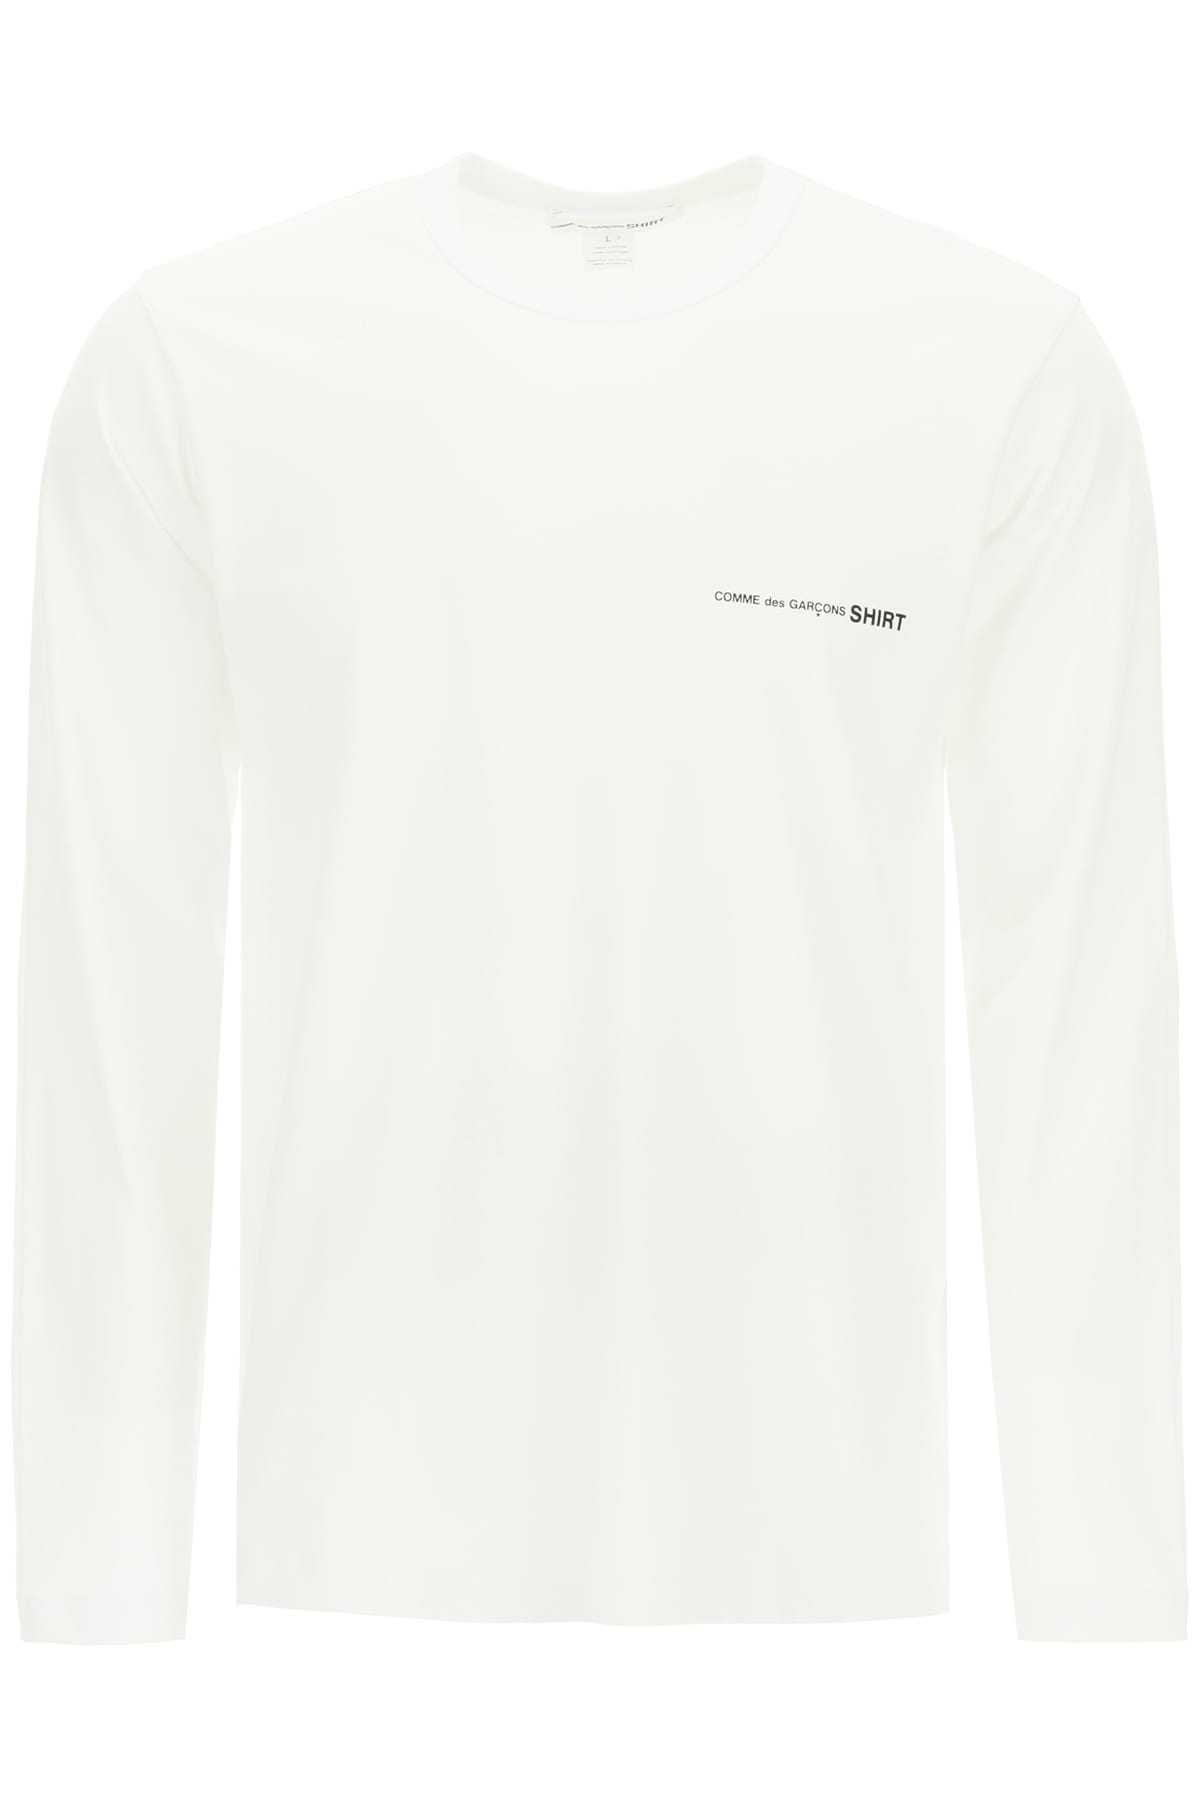 Comme des Garçons Shirt Long-sleeved T-shirt With Logo Print